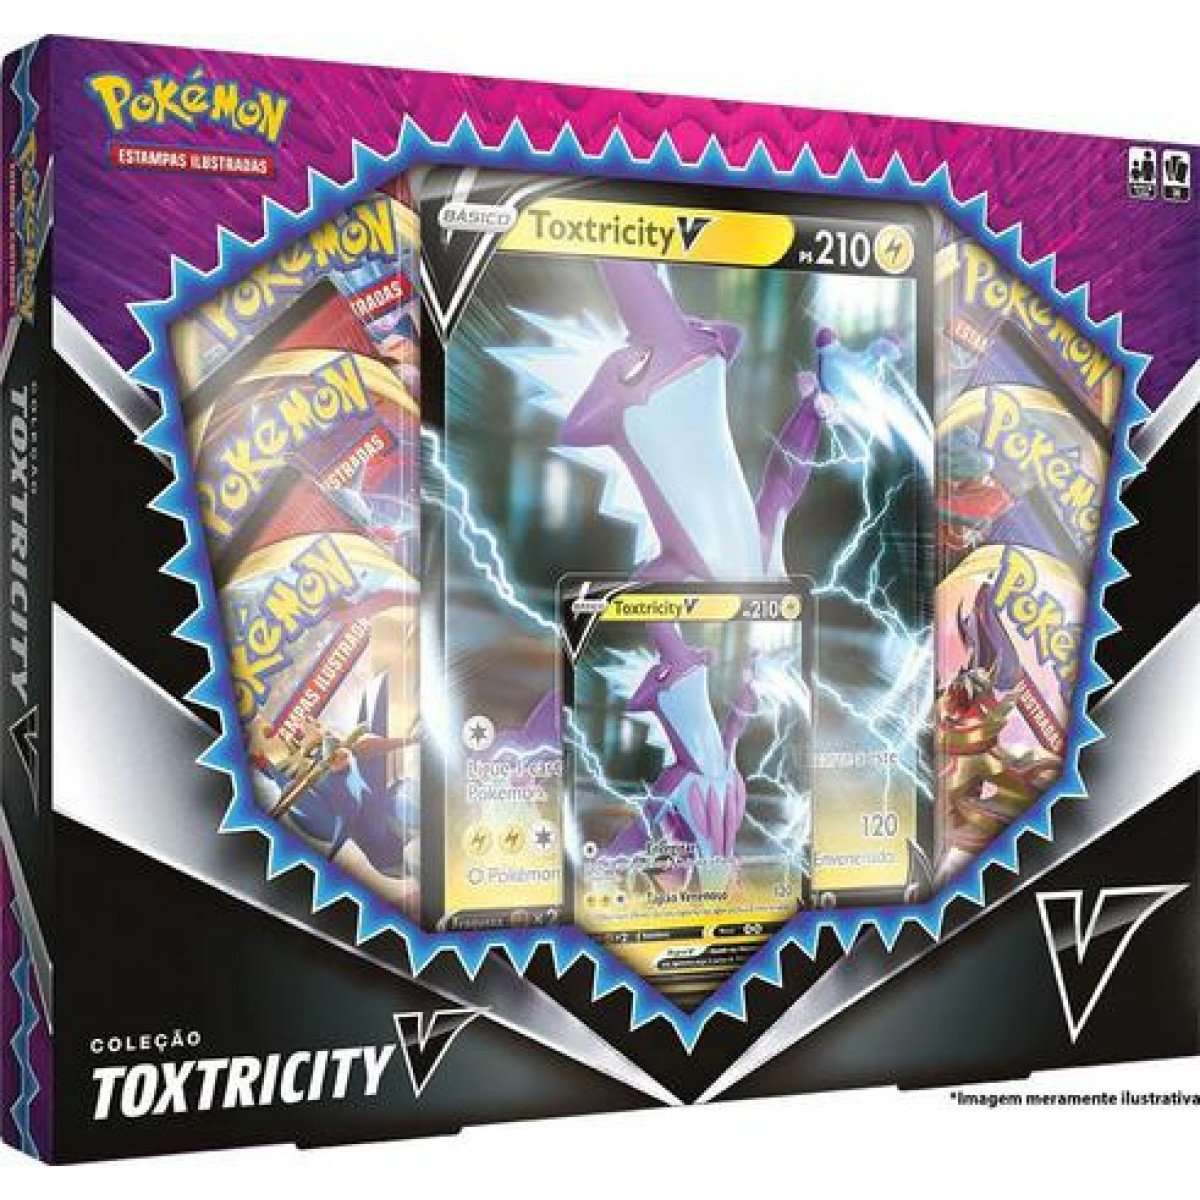 Pokémon Toxtricity V Box Caixa Tcg Cards Cartas Jogo ...